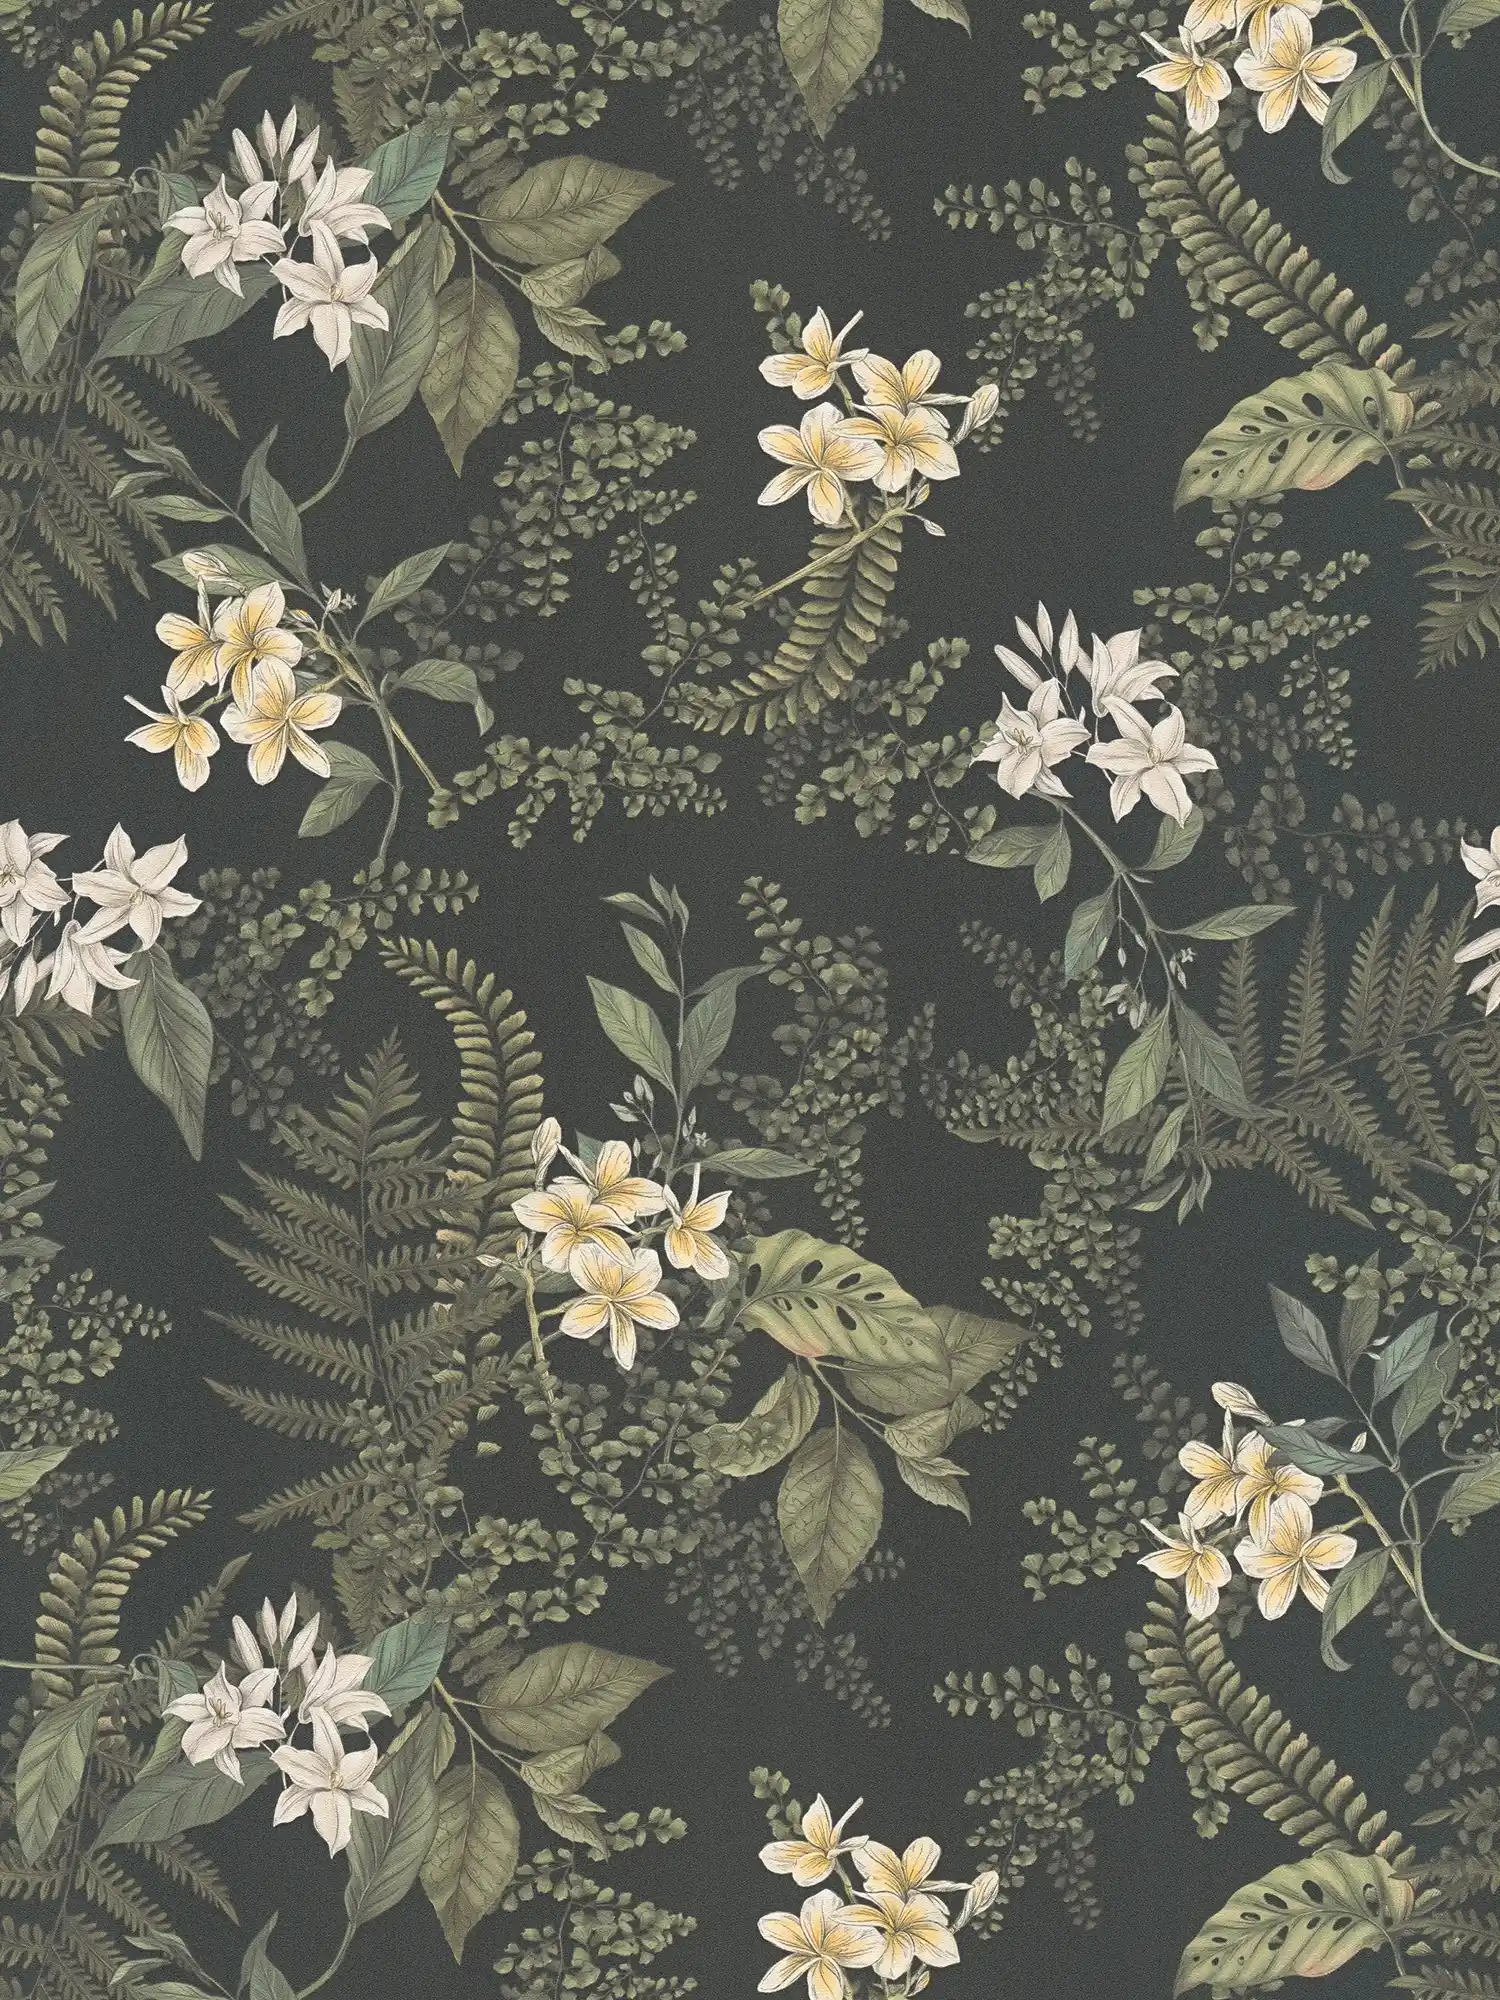 papier peint moderne floral avec fleurs & herbes structuré mat - noir, vert foncé, blanc
